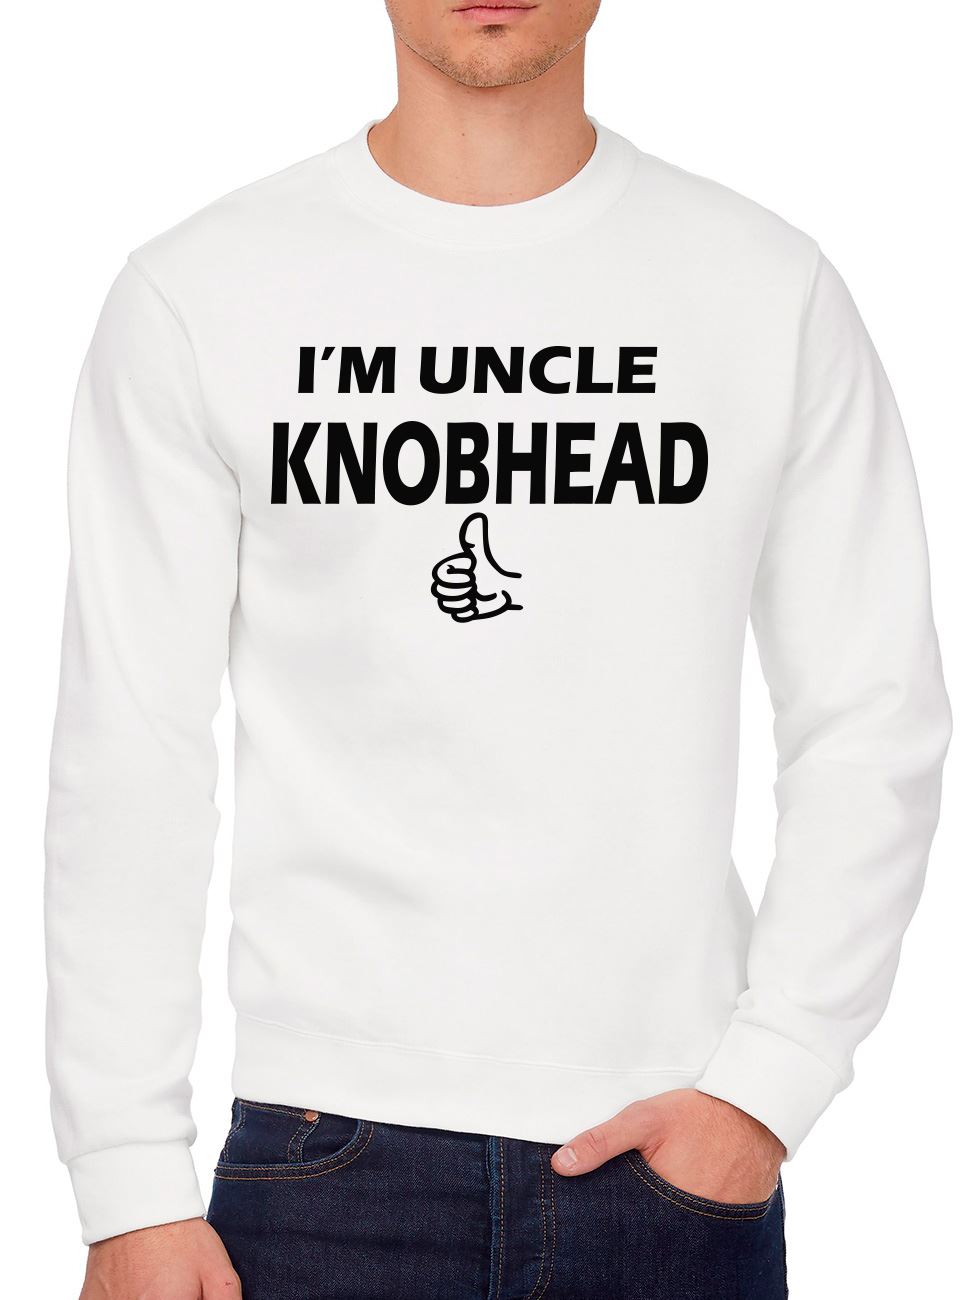 I'm Uncle Knobhead - Mens Sweatshirt